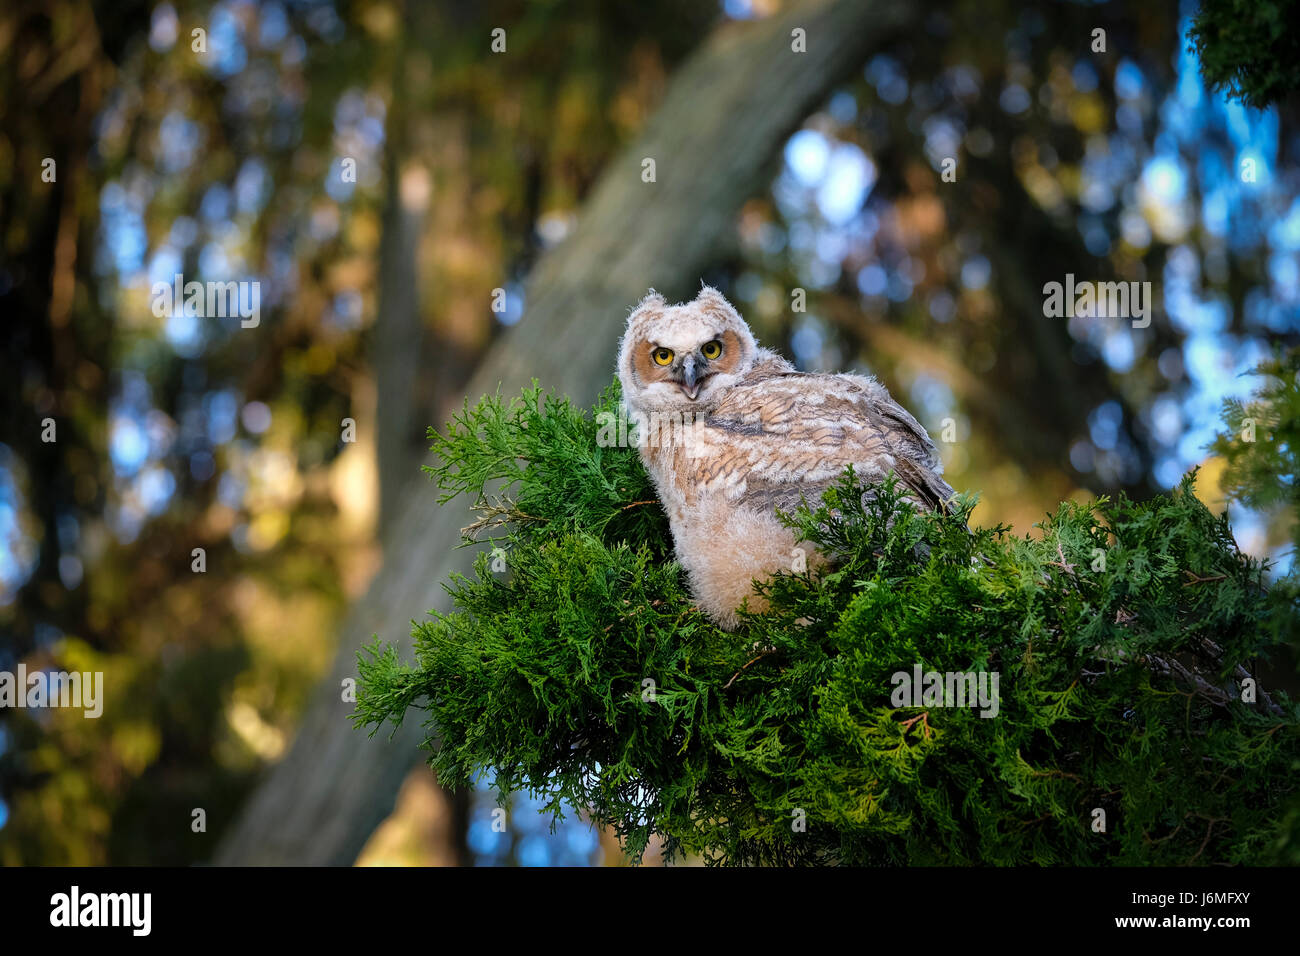 Sauvages juvéniles grand-duc d'Amérique (Bubo virginianus), de l'Est, owl Owl Hoot, perché sur la branche d'evergreen, regardant la caméra, London, Ontario, Canada. Banque D'Images